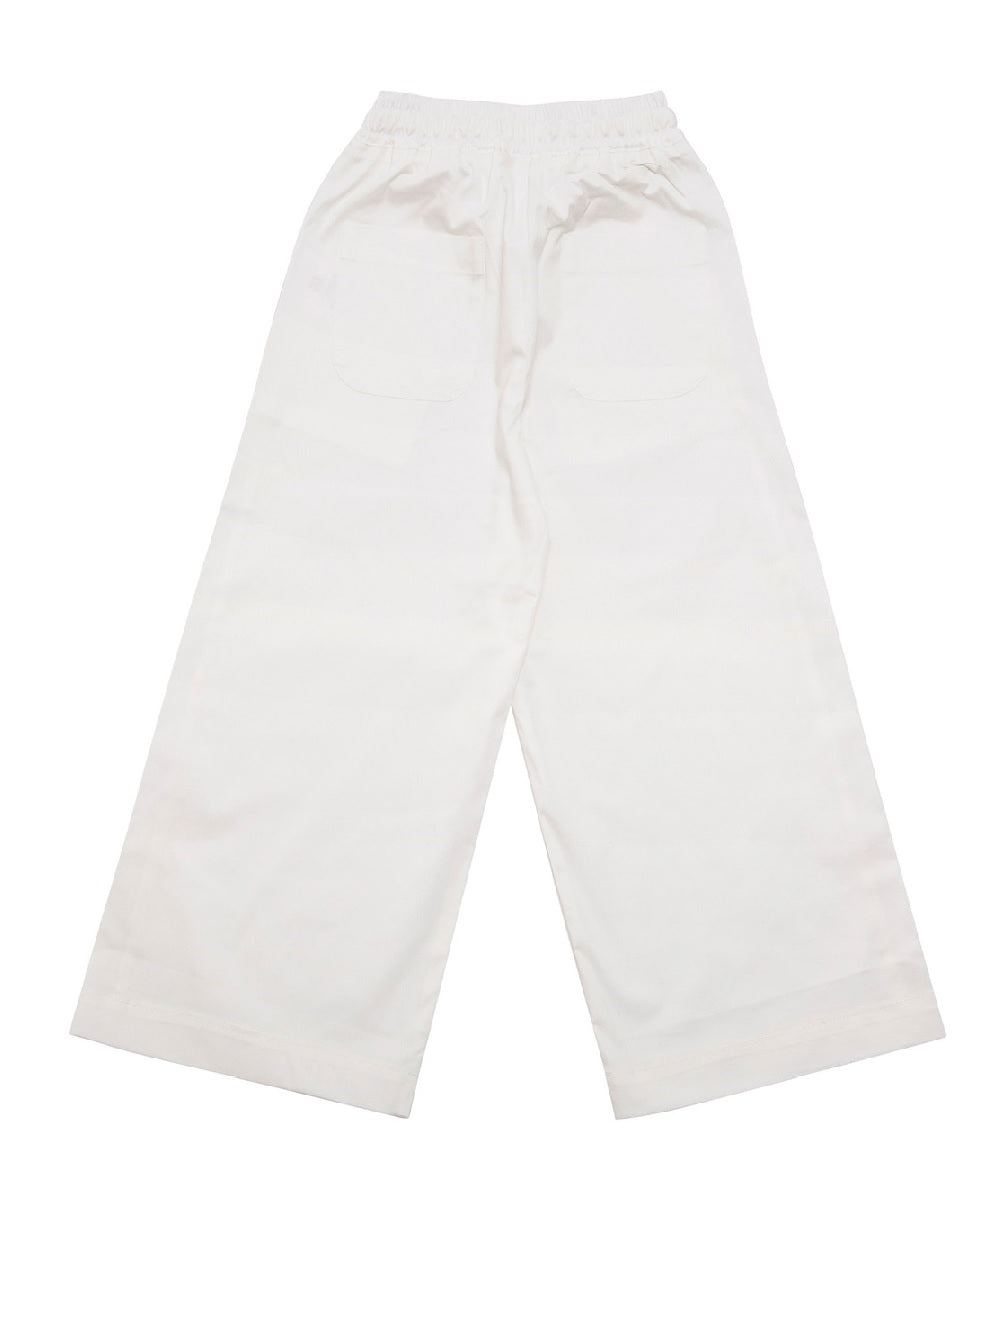 Pantalone Gaudì in cotone con tasche a filetto, vita elasticizzata e cintura in tessuto gros-grain.